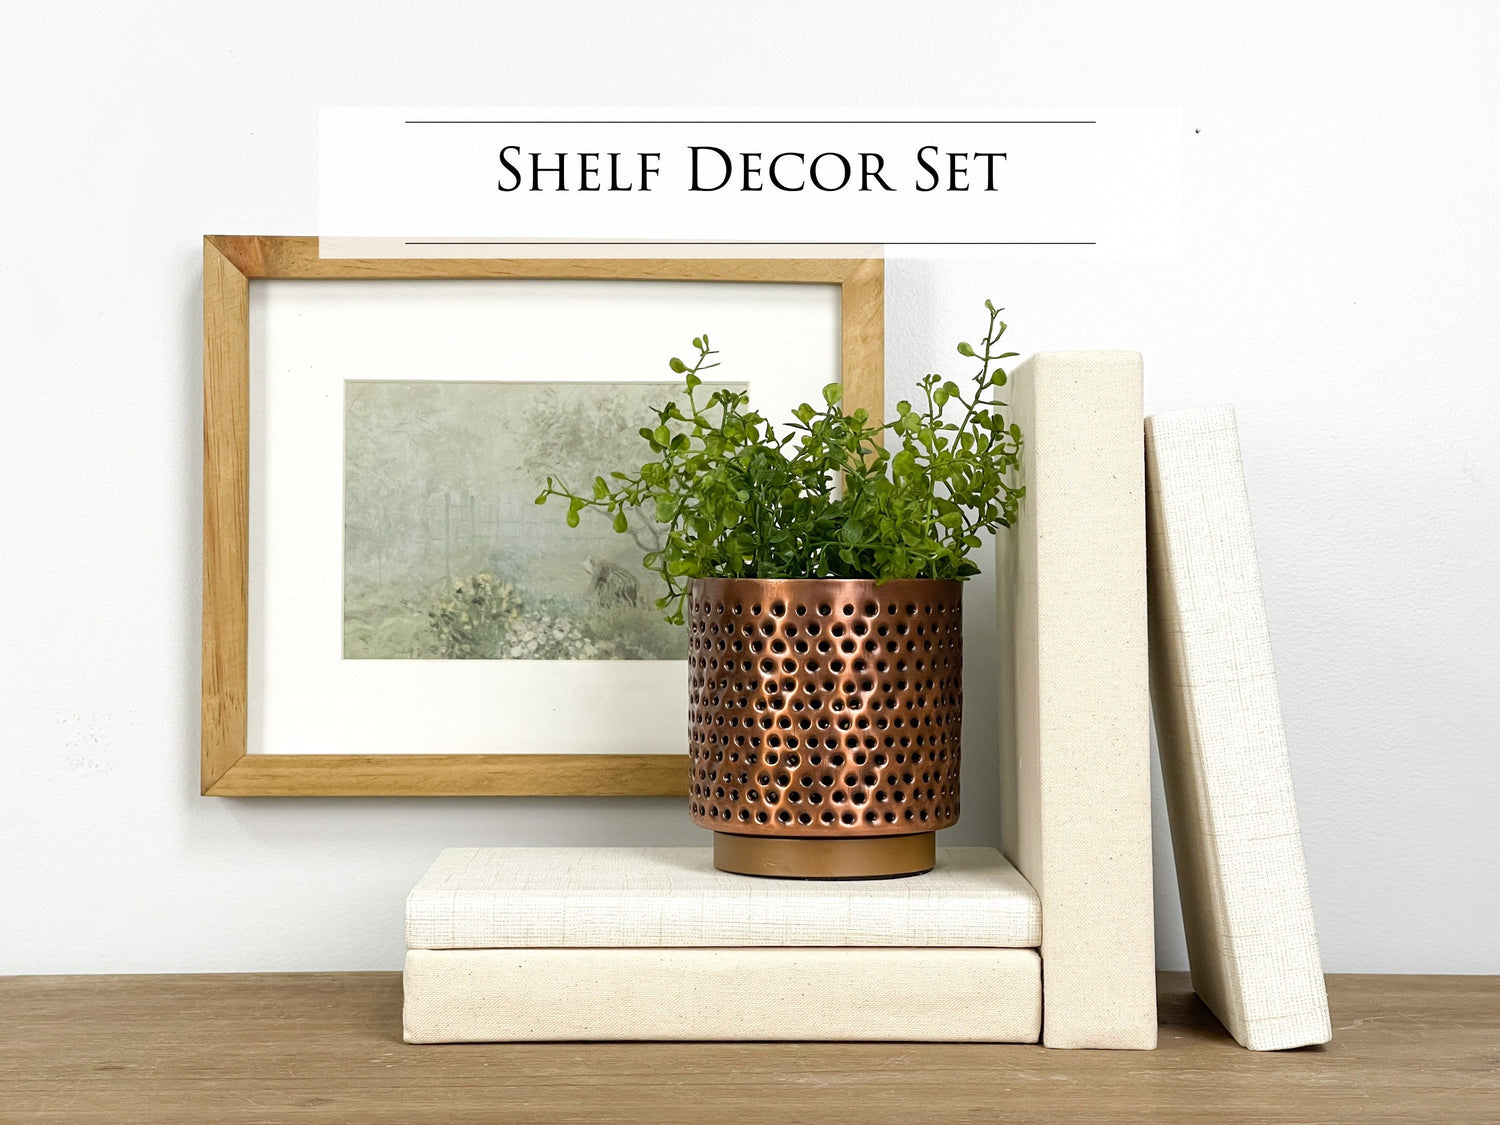 Shelf Decor + Book Set